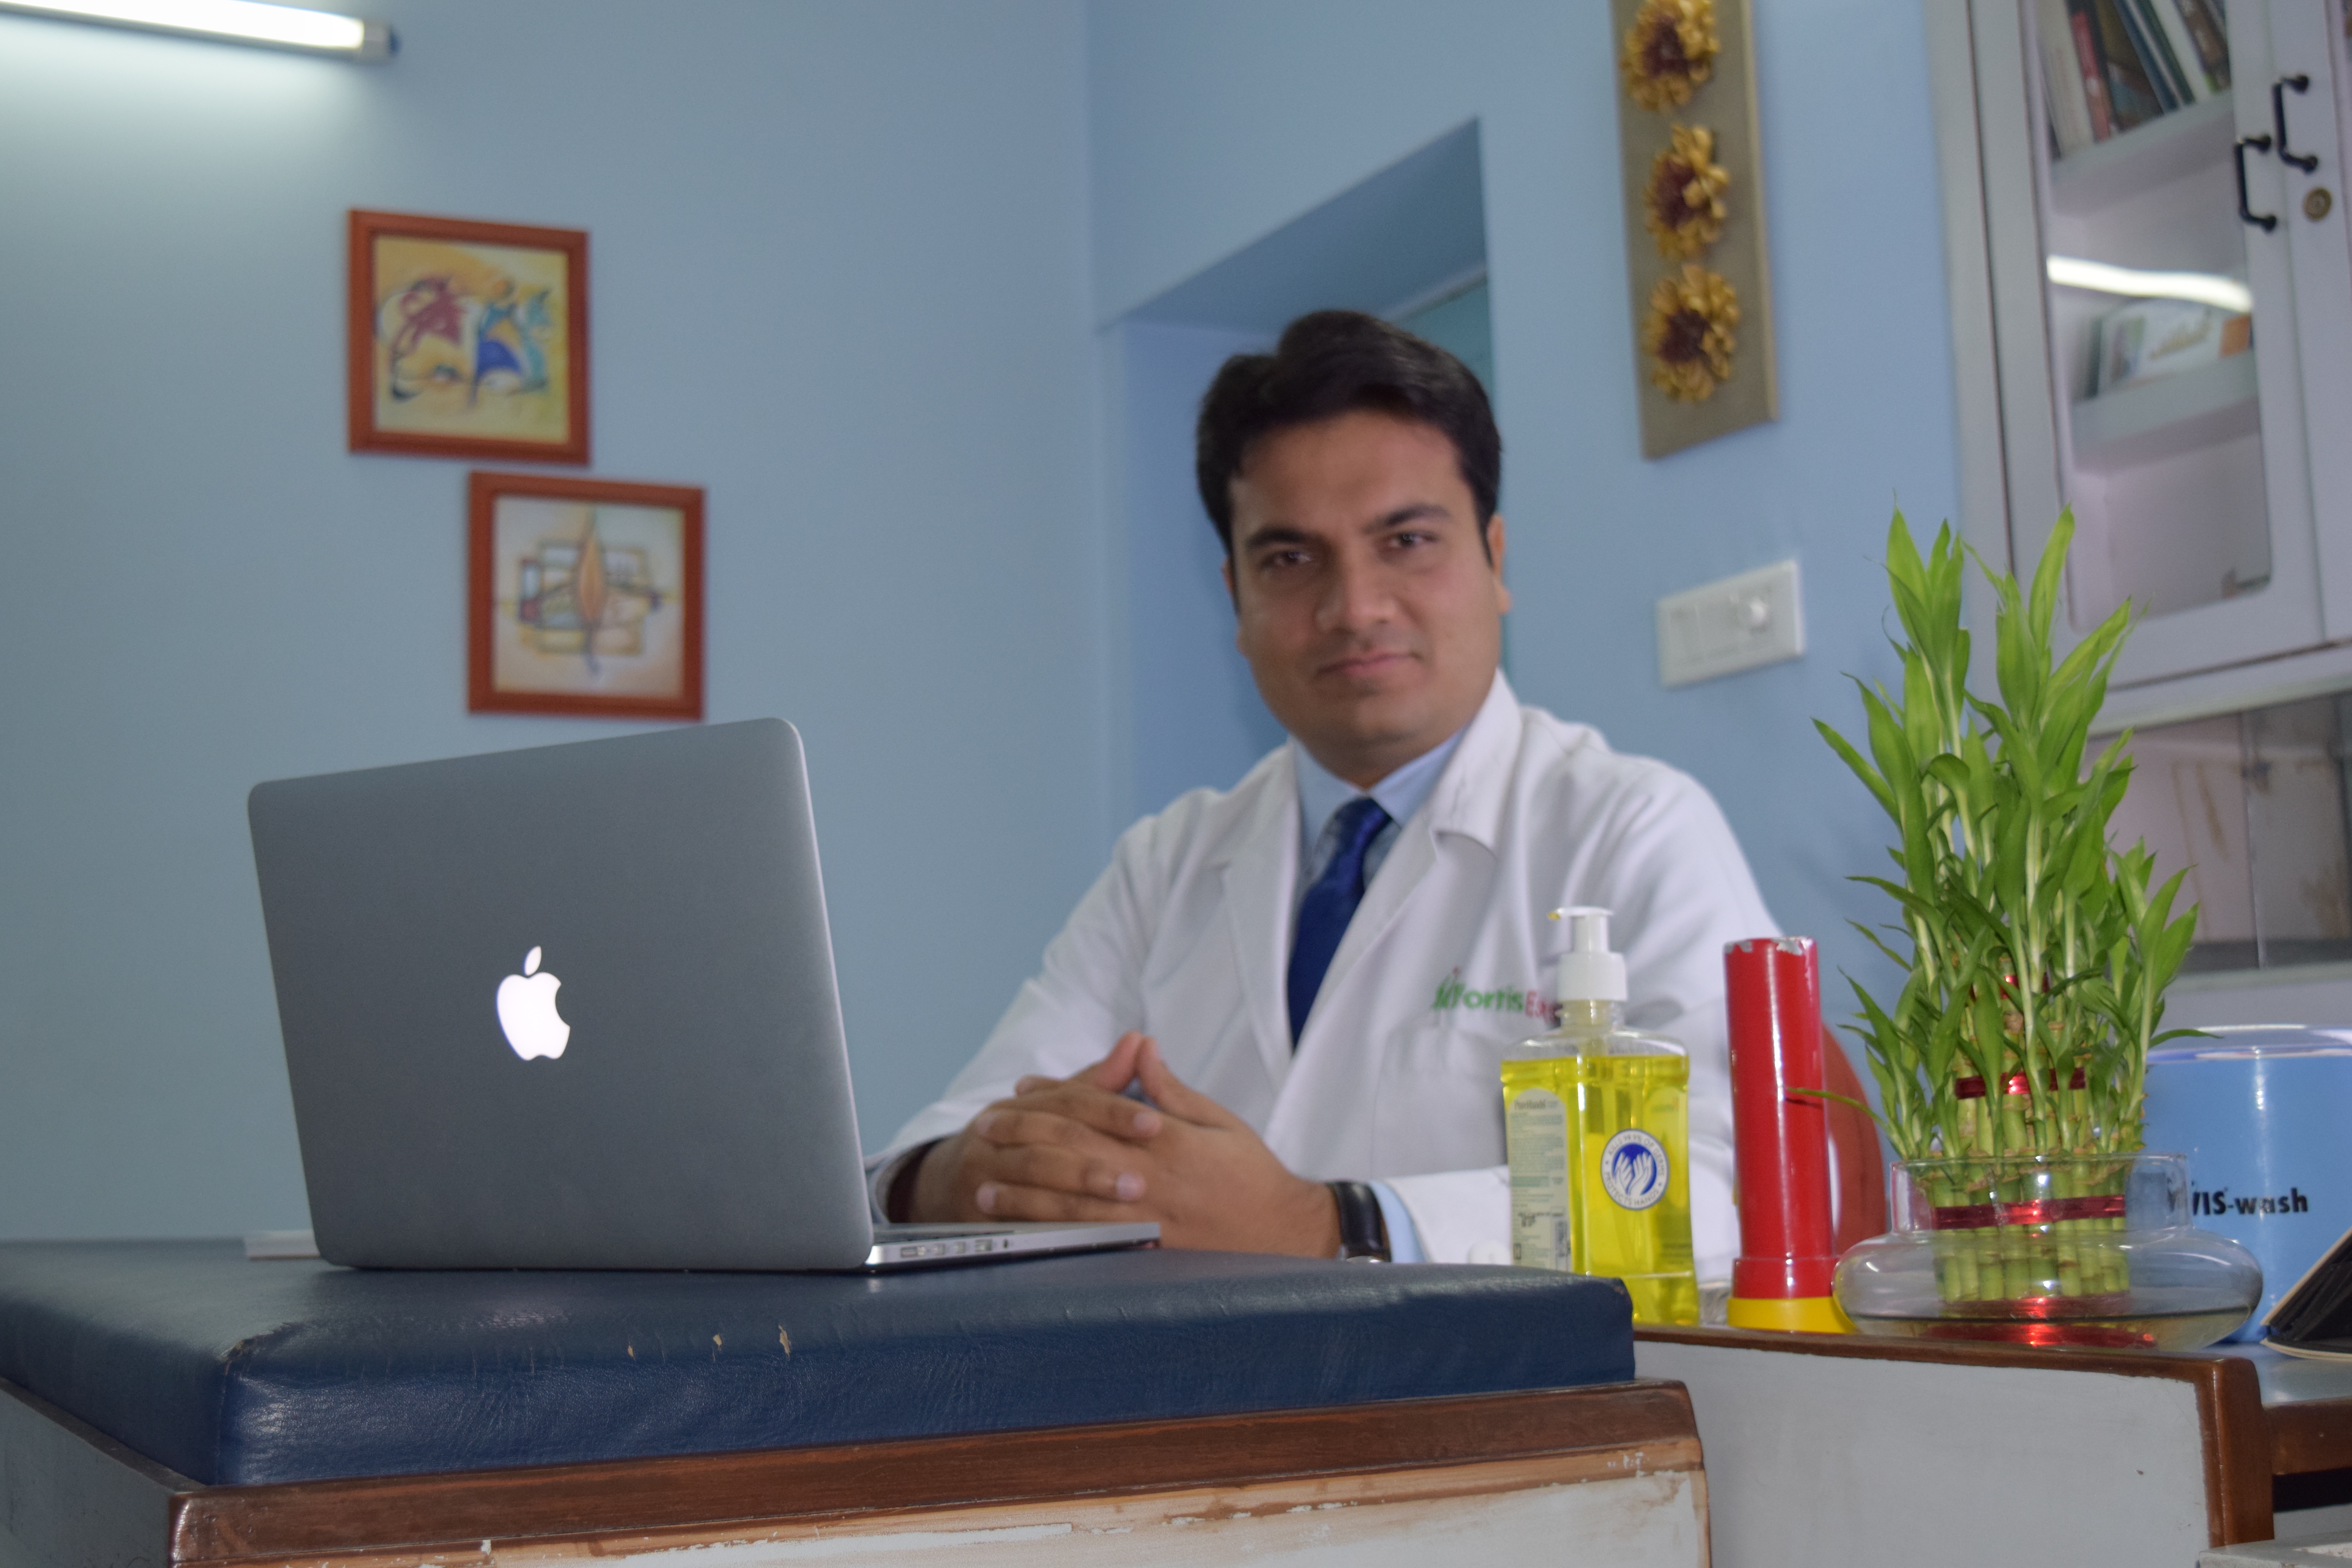 Dr. Shwetank Bansal